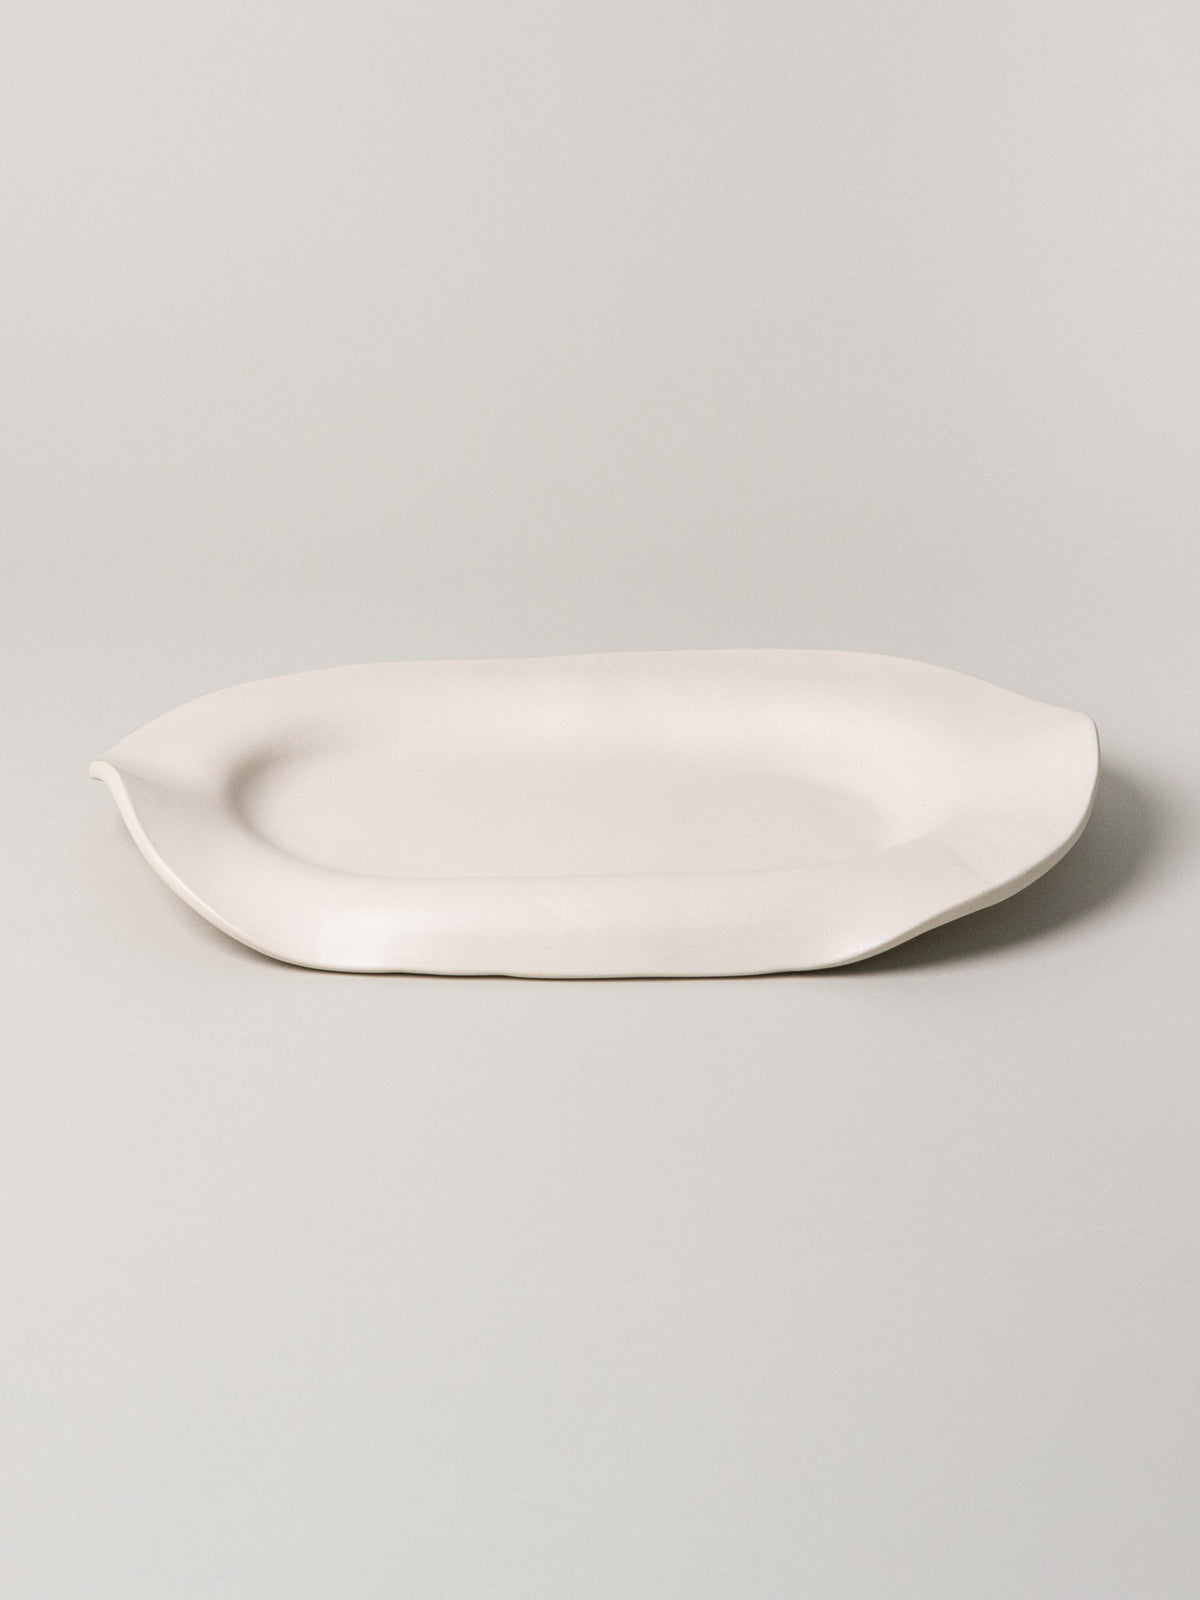 Manta Oval Platter, Alabaster